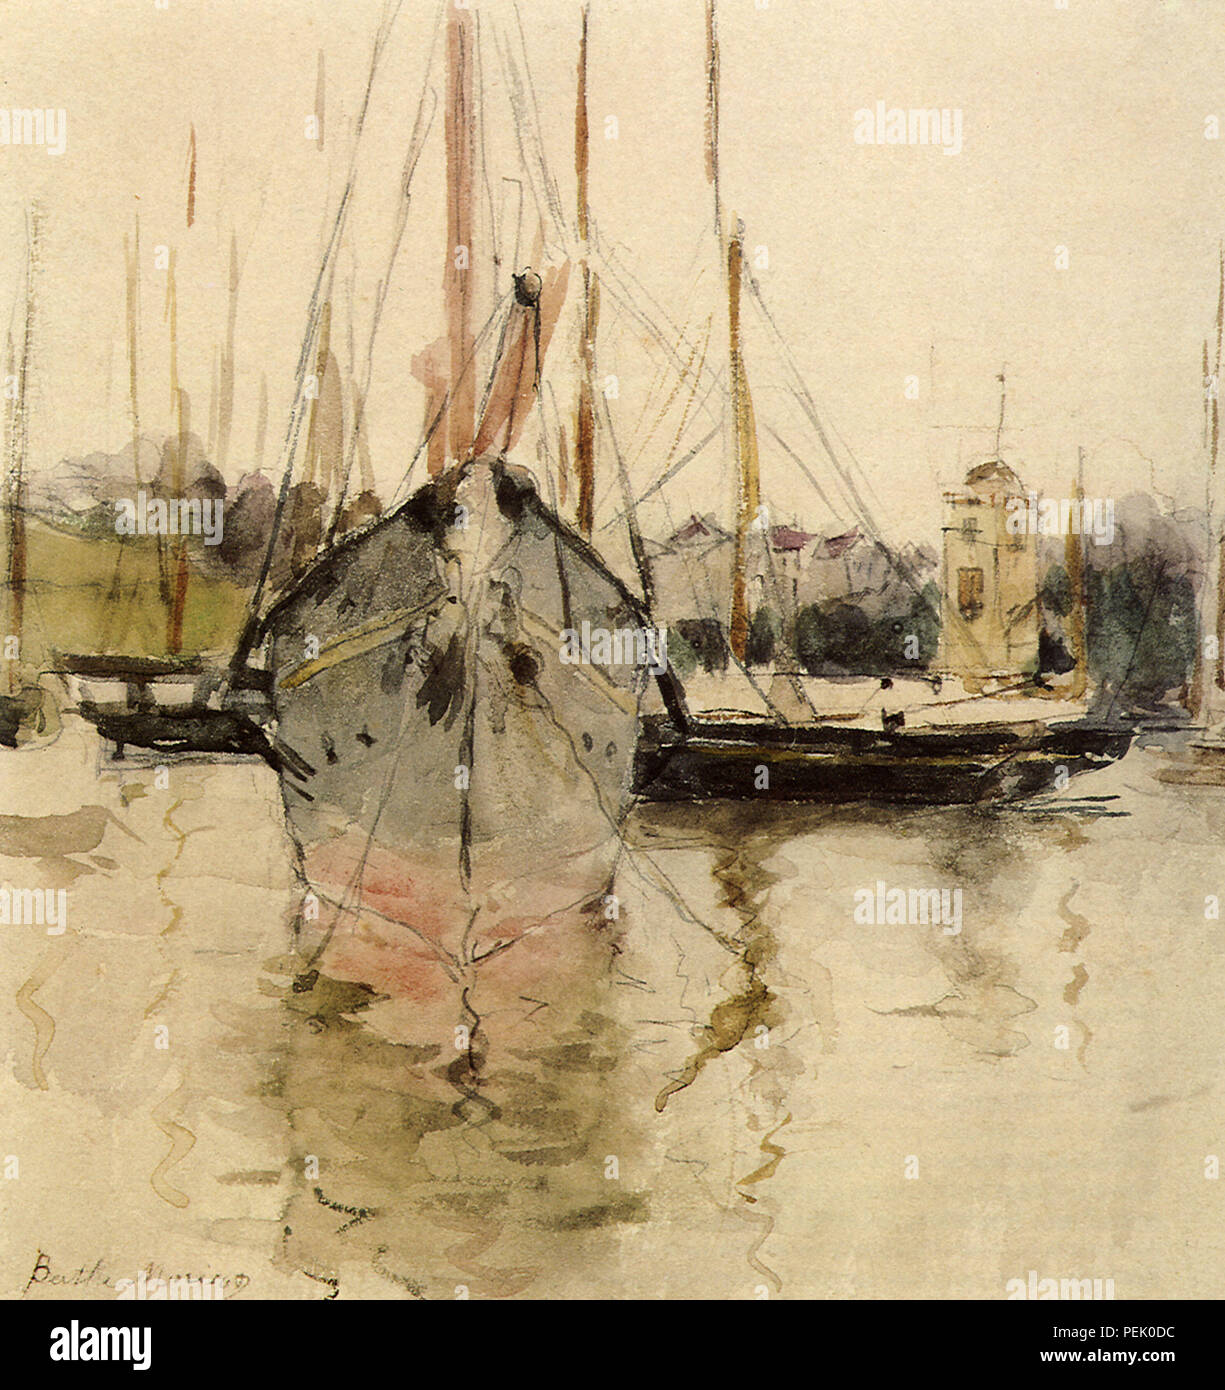 Boats-Entry al Midina nell'Isola di Wight, Morisot, Berthe Foto Stock